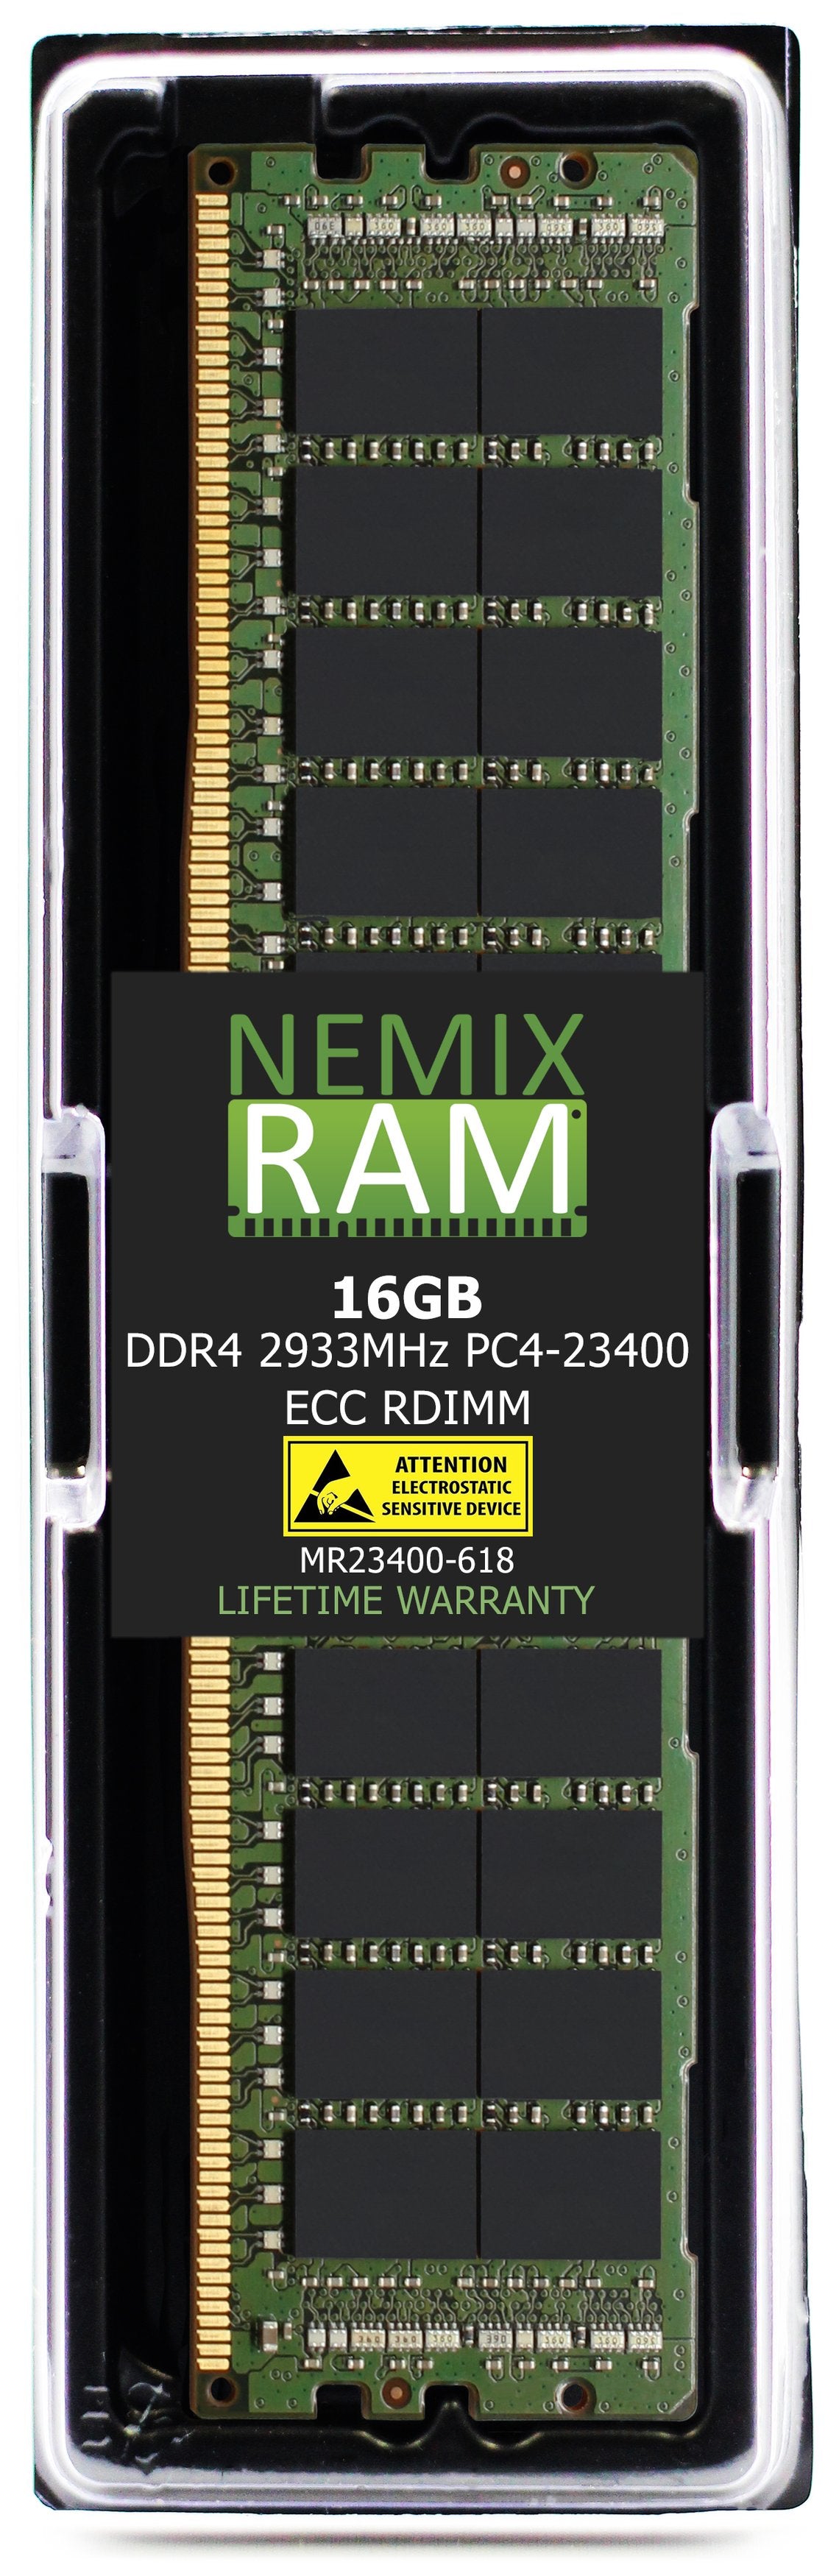 16GB DDR4 2933MHZ PC4-23400 RDIMM Compatible with Supermicro MEM-DR416L-CL05-ER29